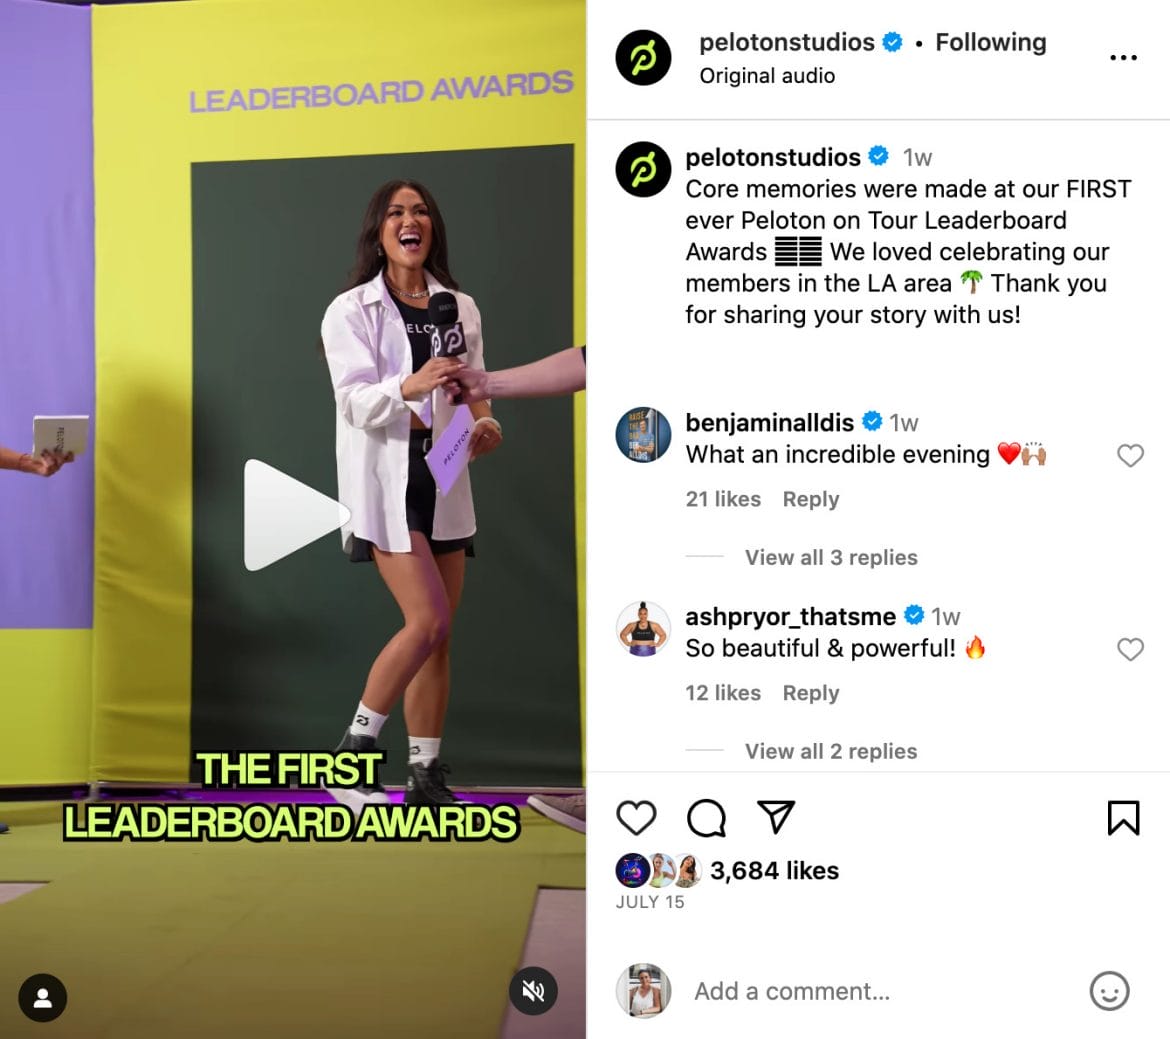 @PelotonStudios Instagram post highlighting Los Angeles Leaderboard Awards.